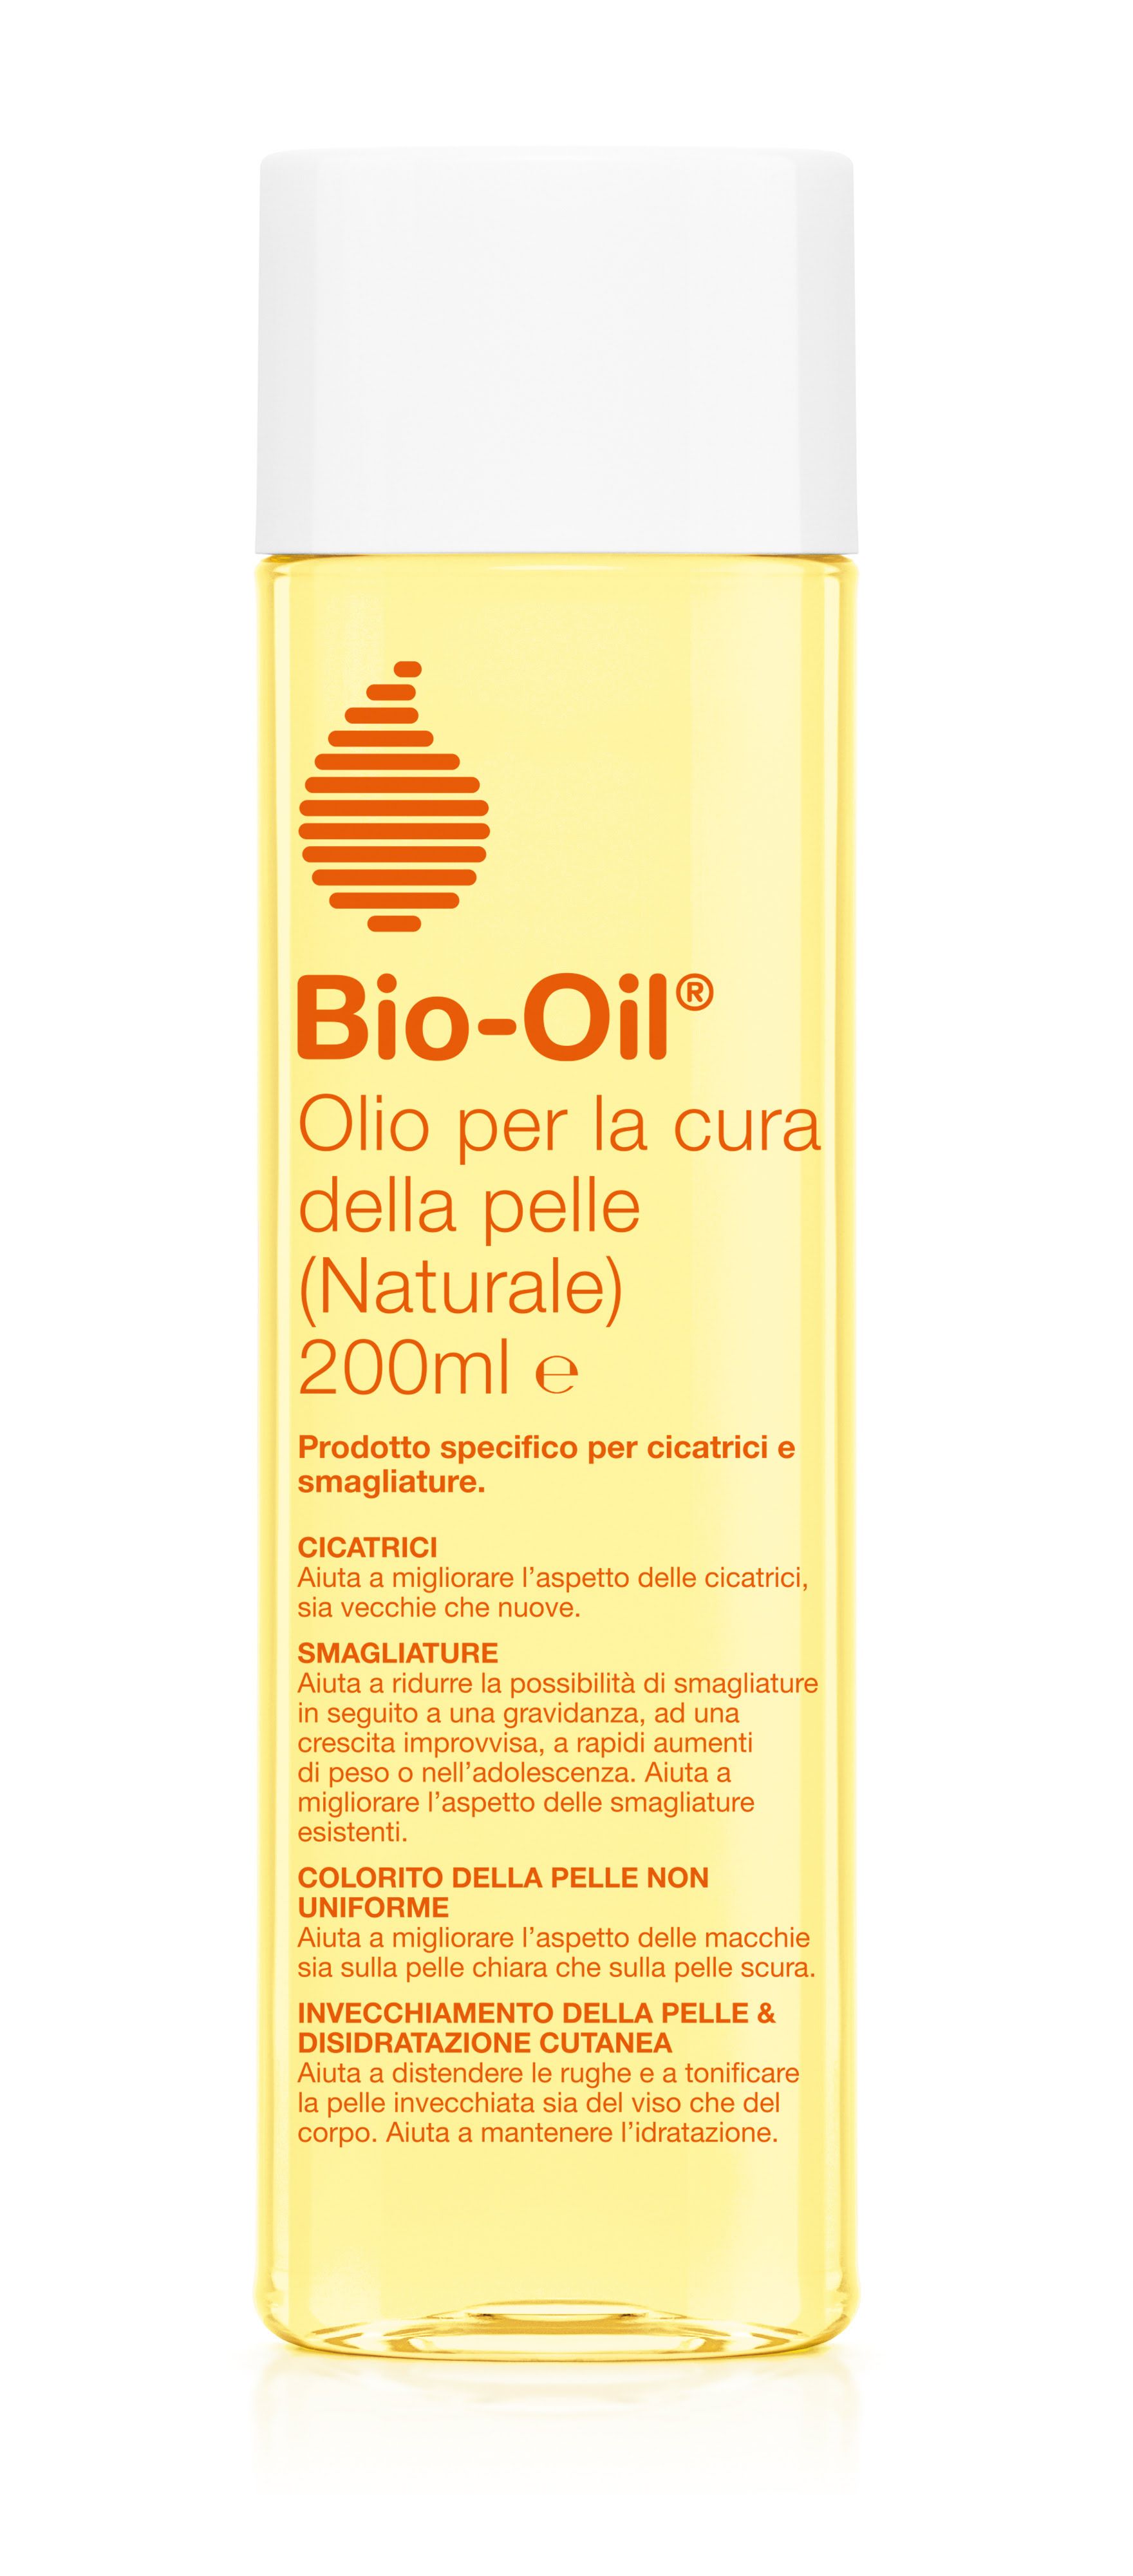 BIO + oil Olio Naturale Per La Cura Della Pelle 200ml